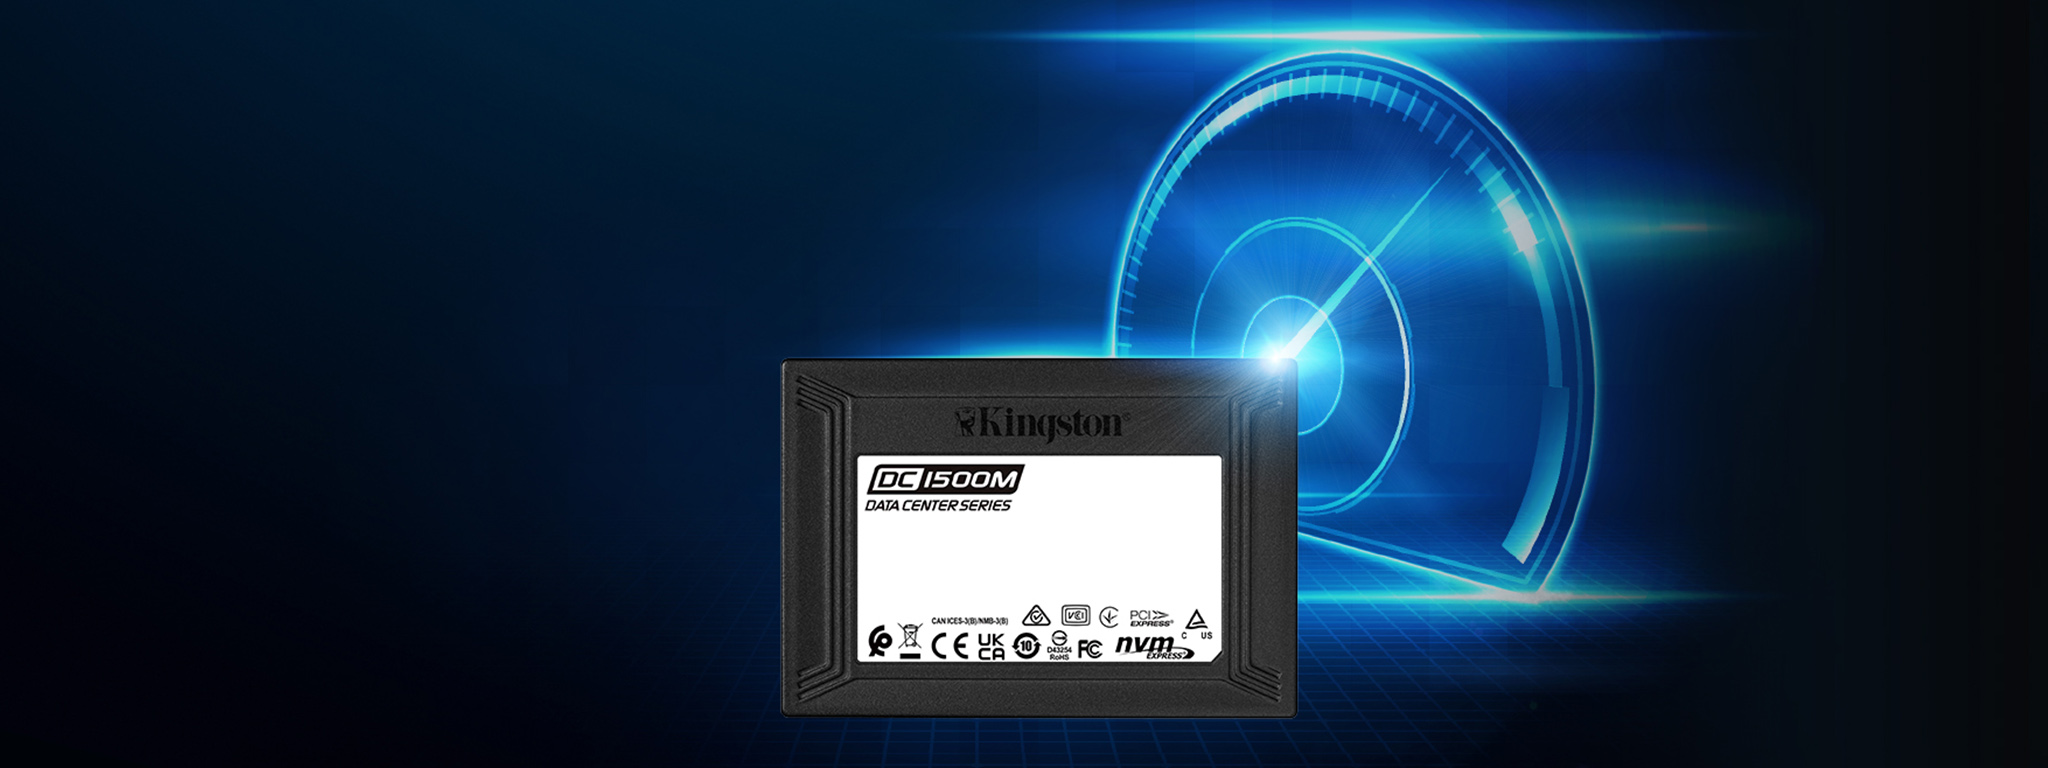 SSD DC1500M de Kingston delante del gráfico de un velocímetro azul brillante que representa la alta velocidad